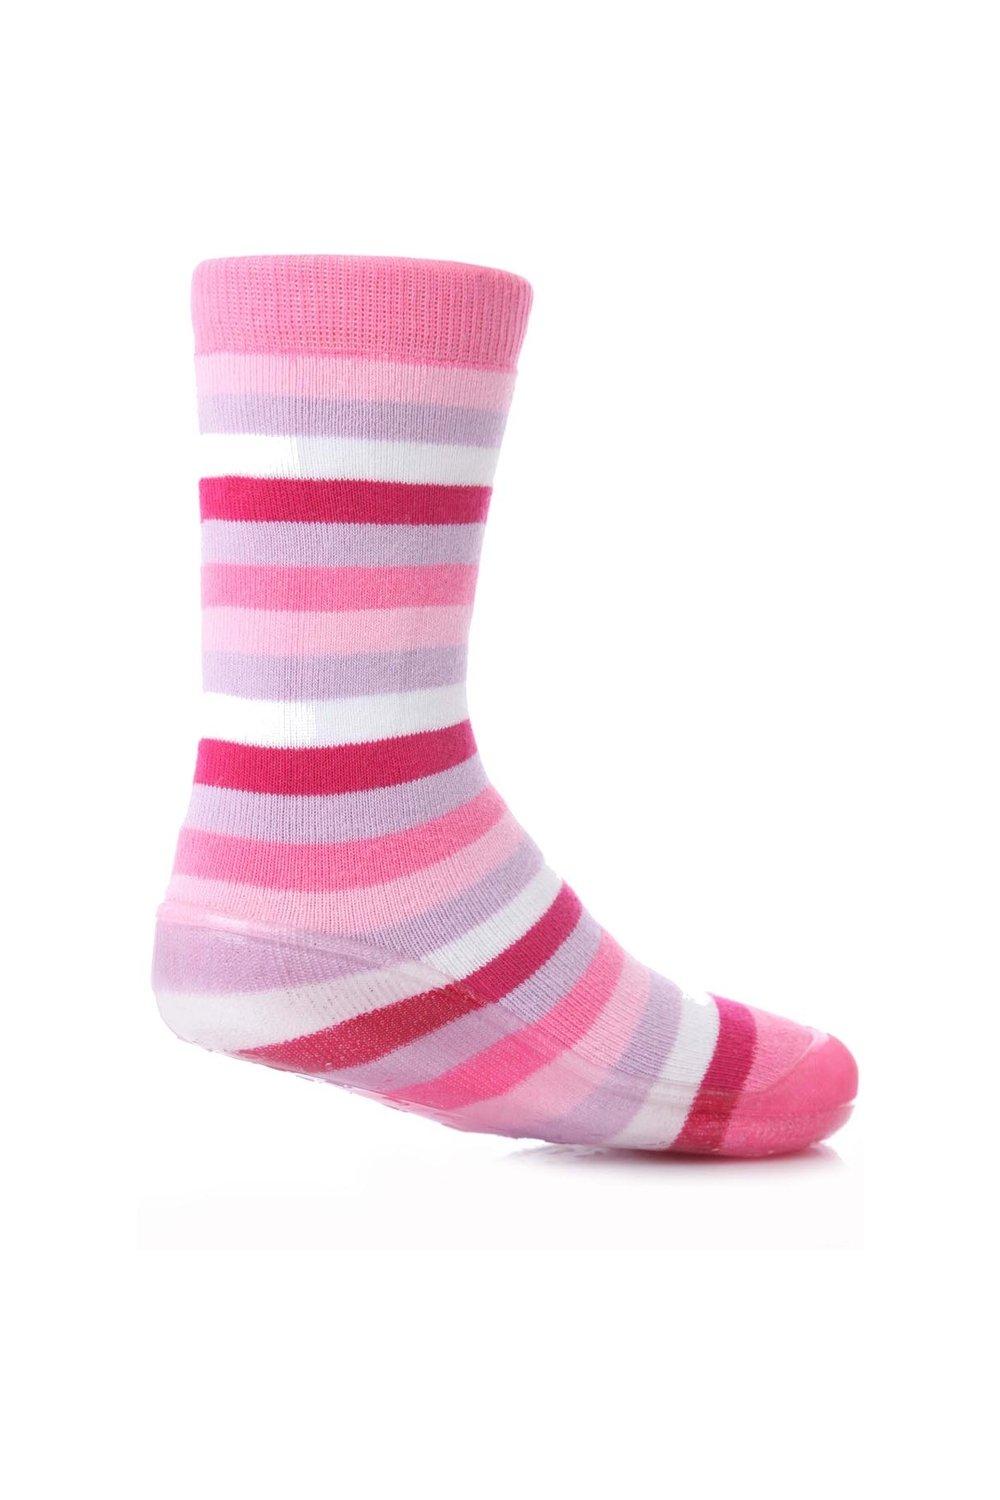 1 пара полосатых носков-тапочек Gripper со скидкой 25% на этот стиль SOCKSHOP, розовый